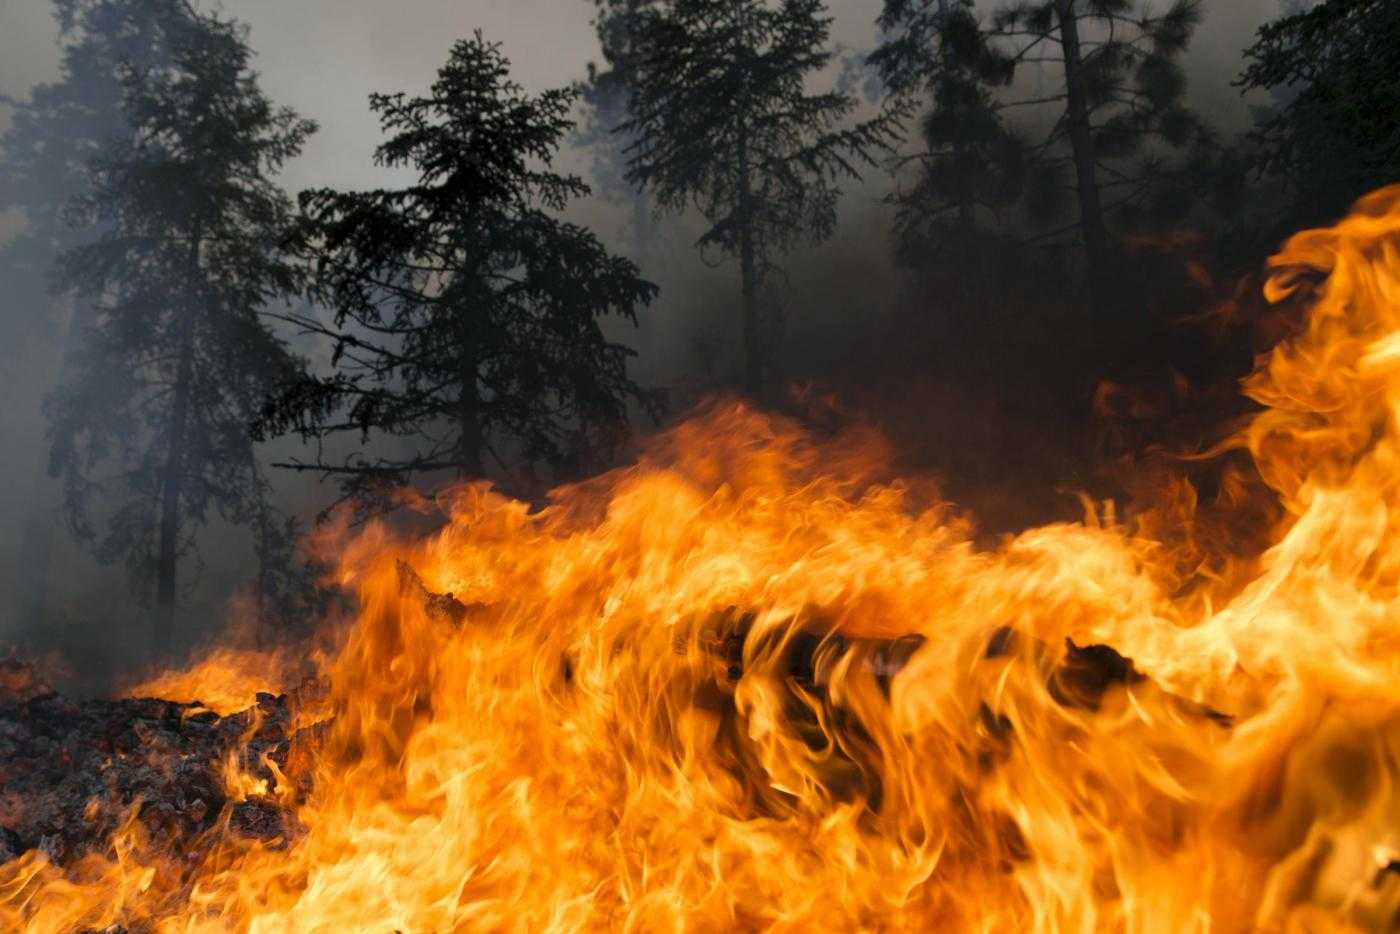 Portogallo,incendio devasta boschi della cittadina Pedrógão Grande: almeno 43 morti